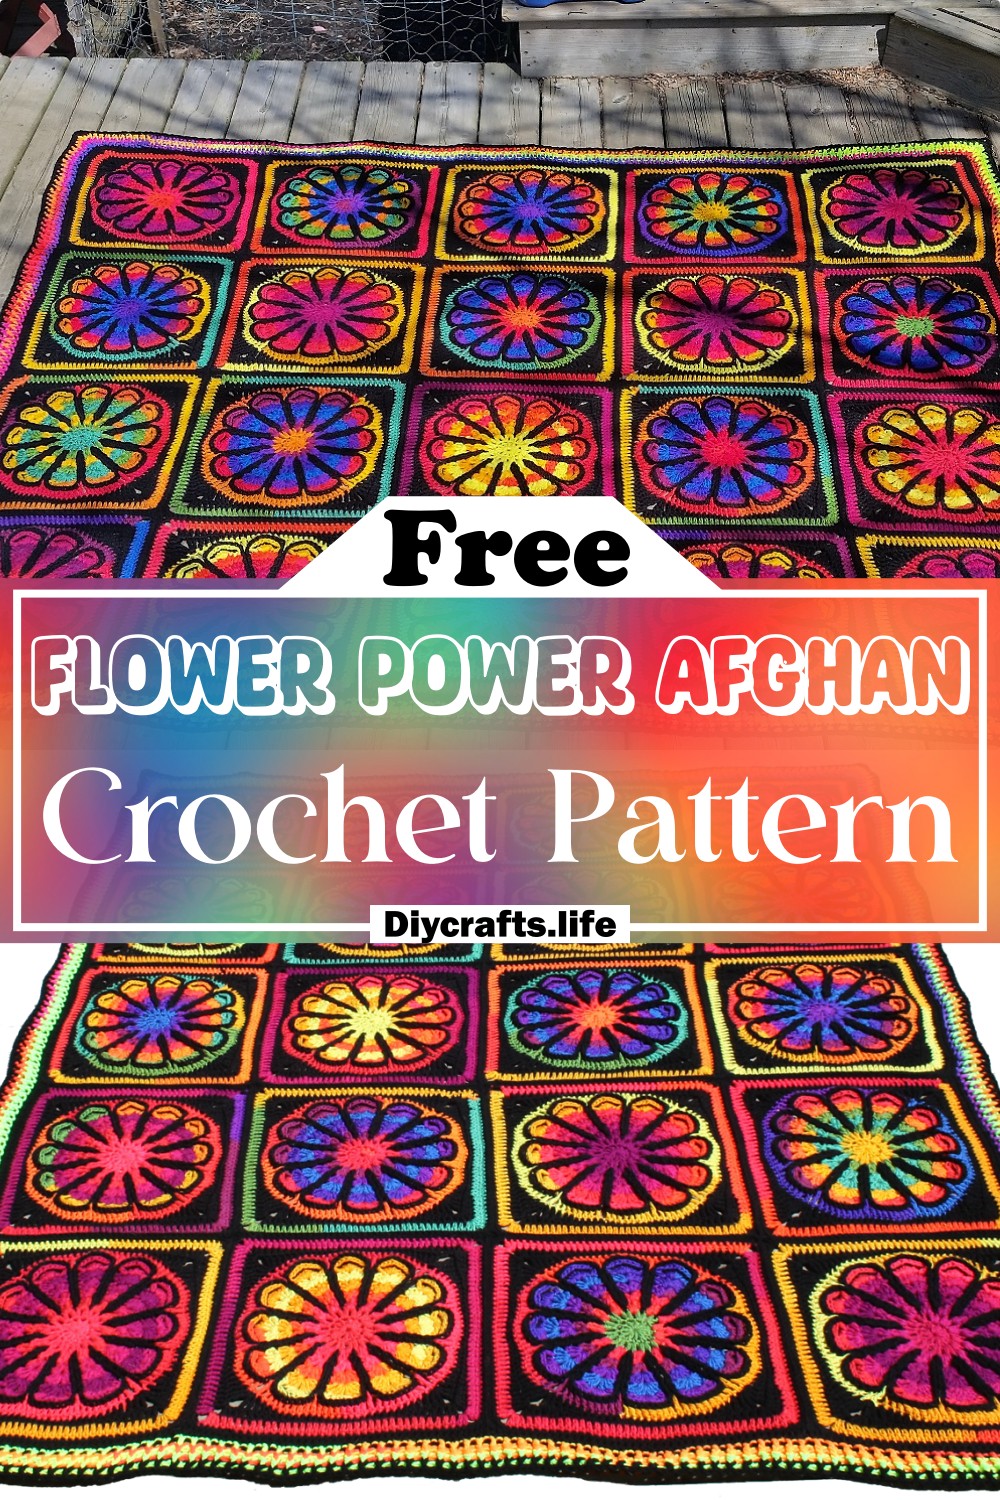 Free Crochet Flower Power Afghan Pattern